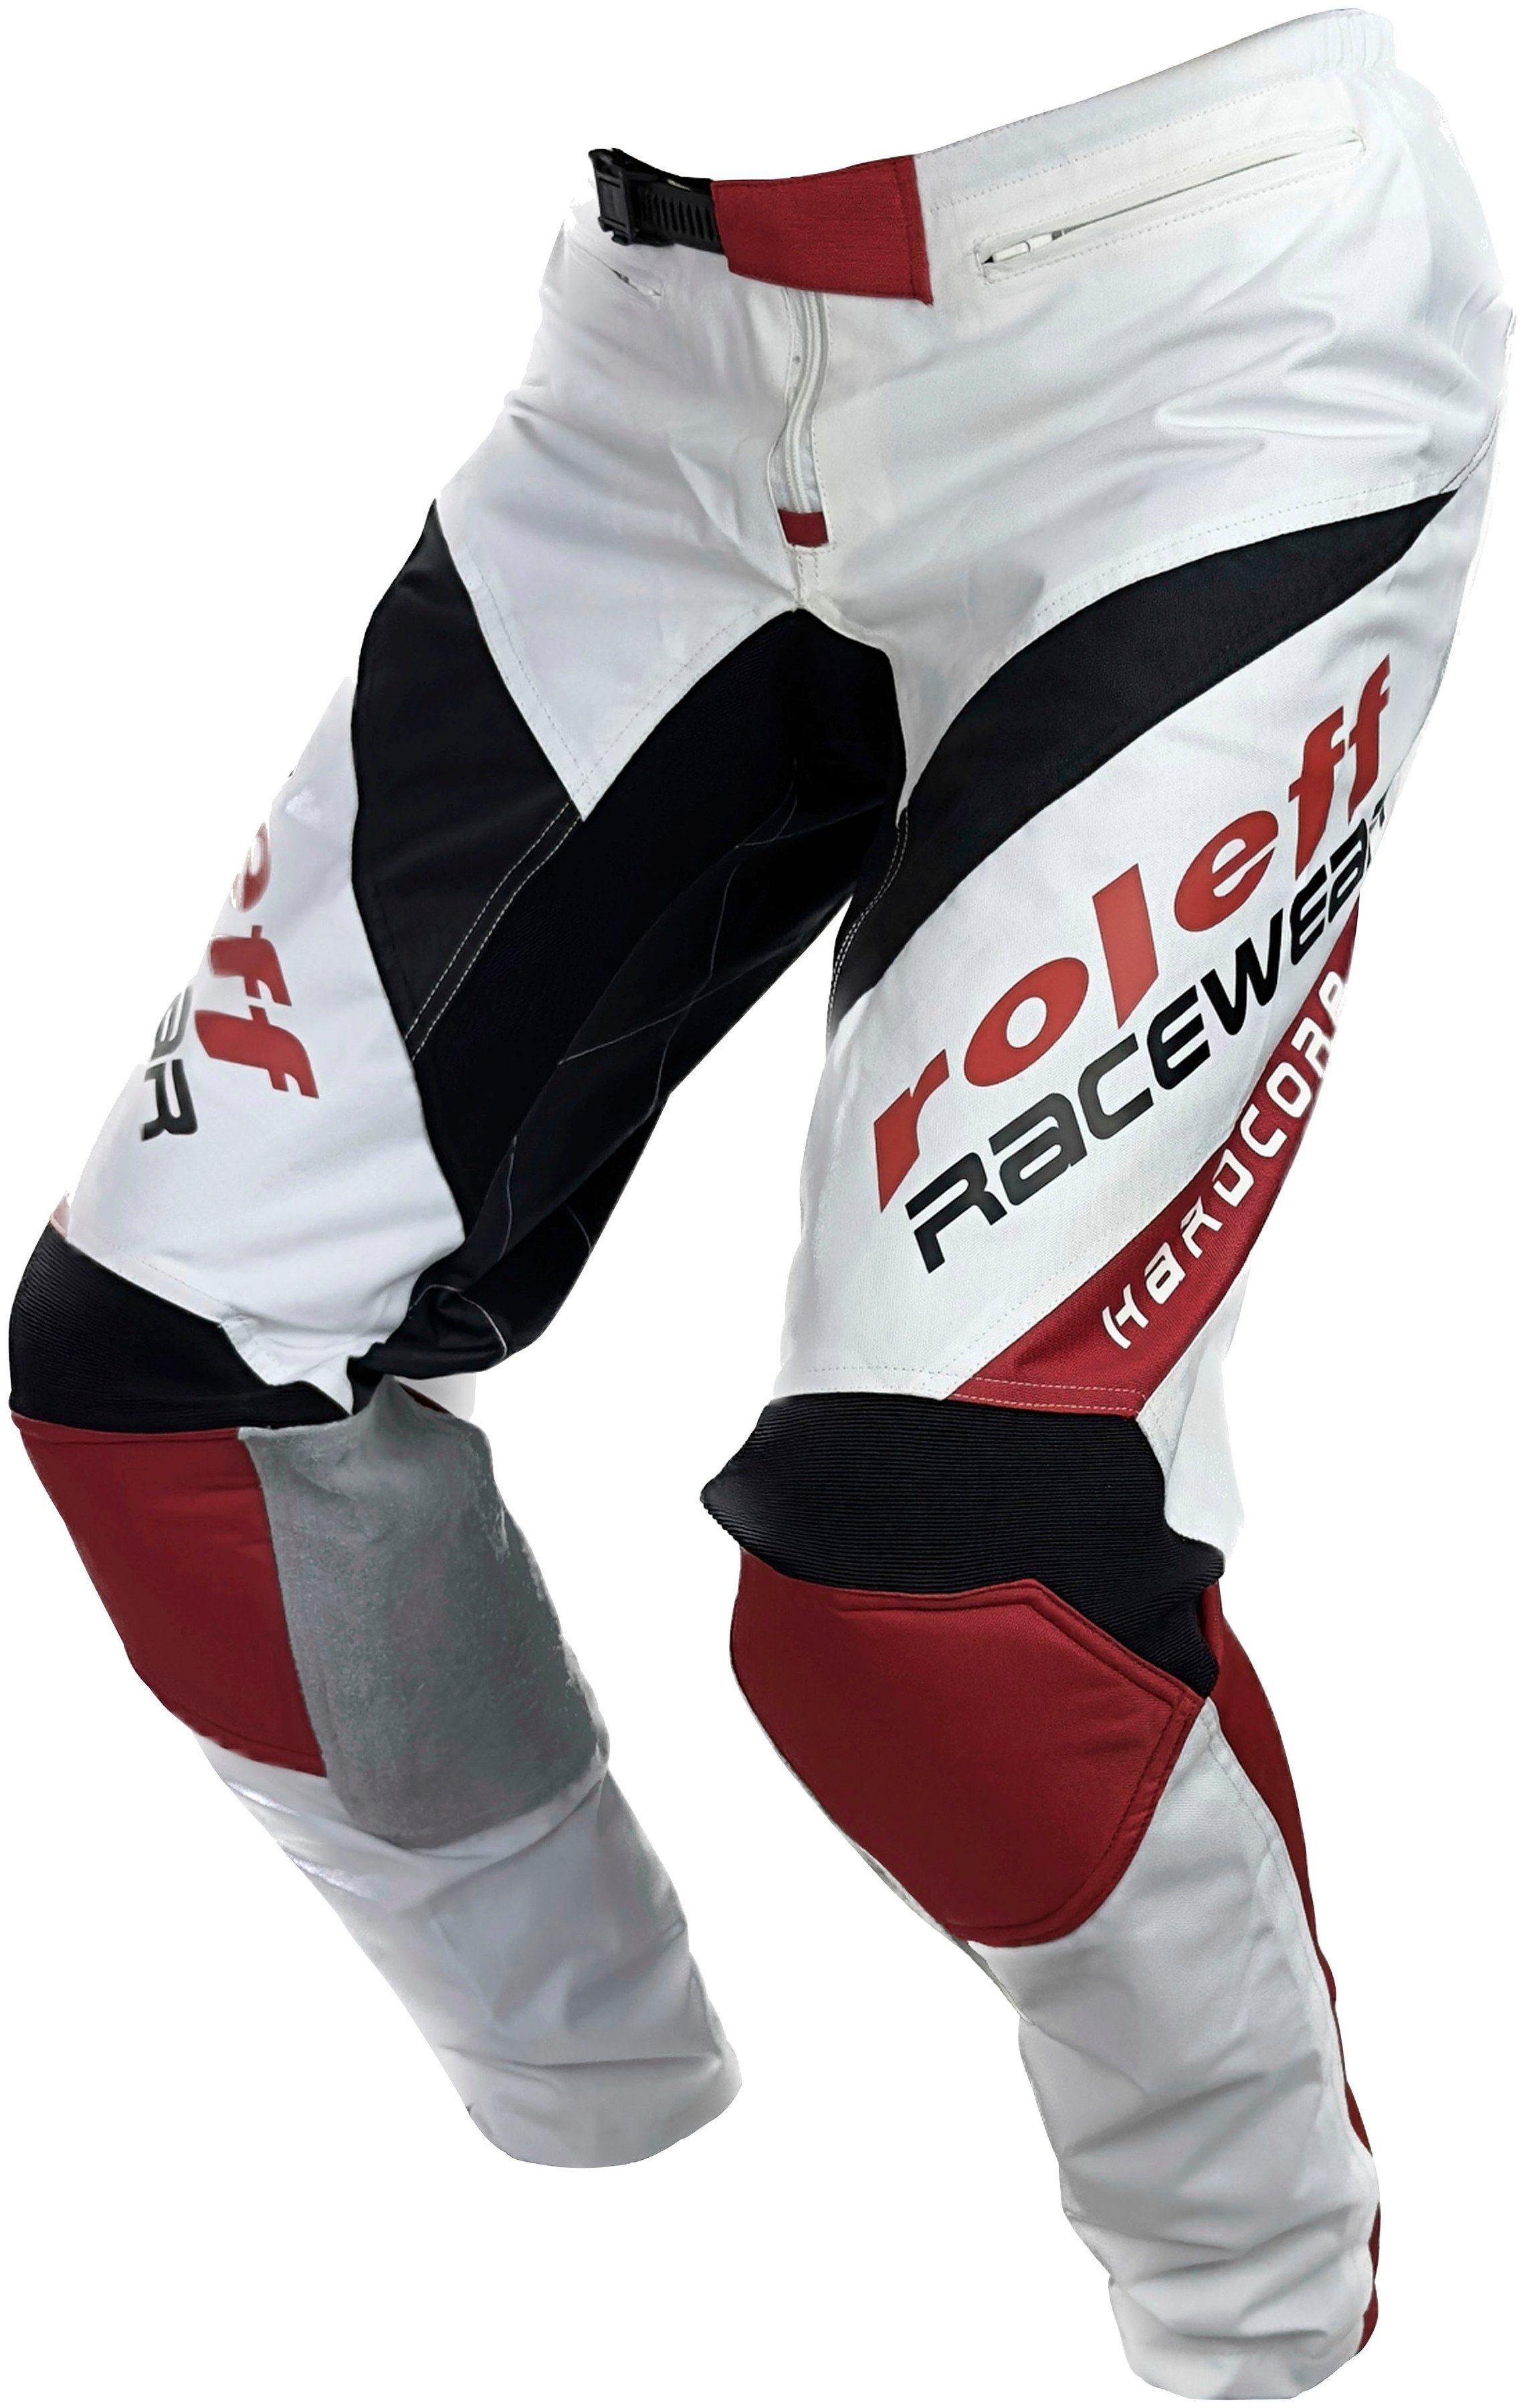 mit Motorradhose Motocross Lederverstärkungen und 872 roleff Stretcheinlagen RO